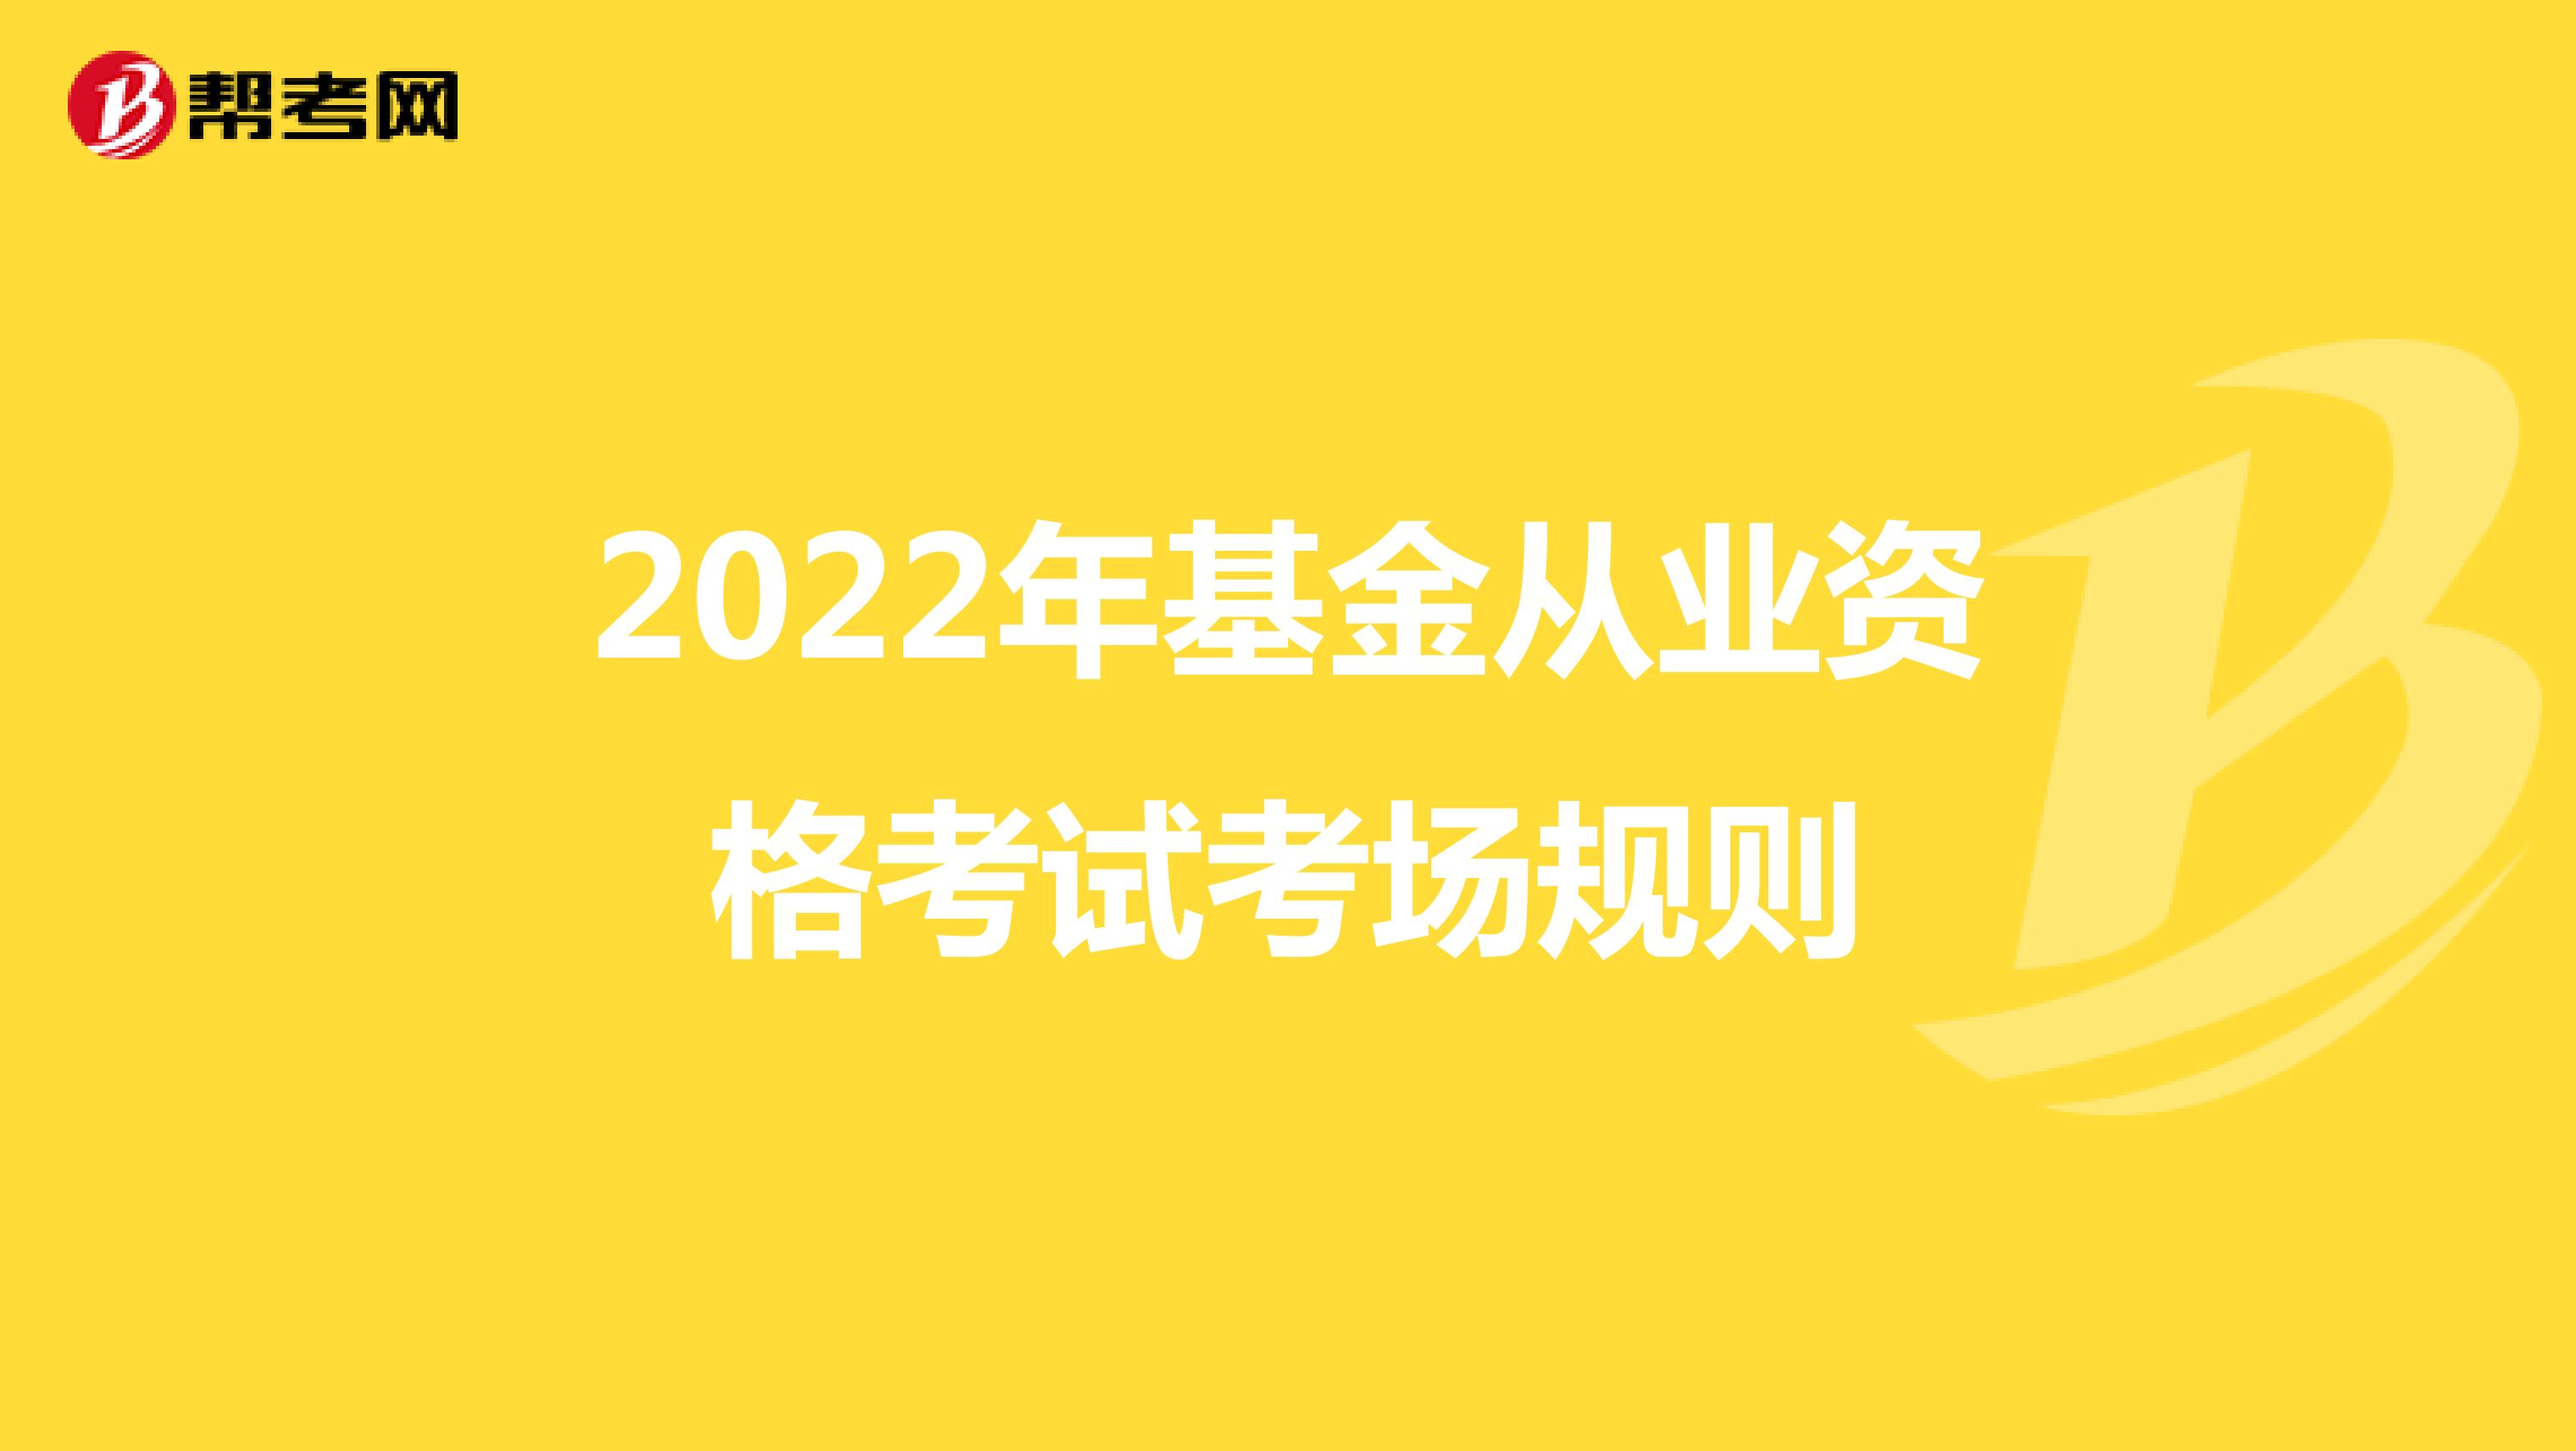 2022年基金從業資格考試考場規則